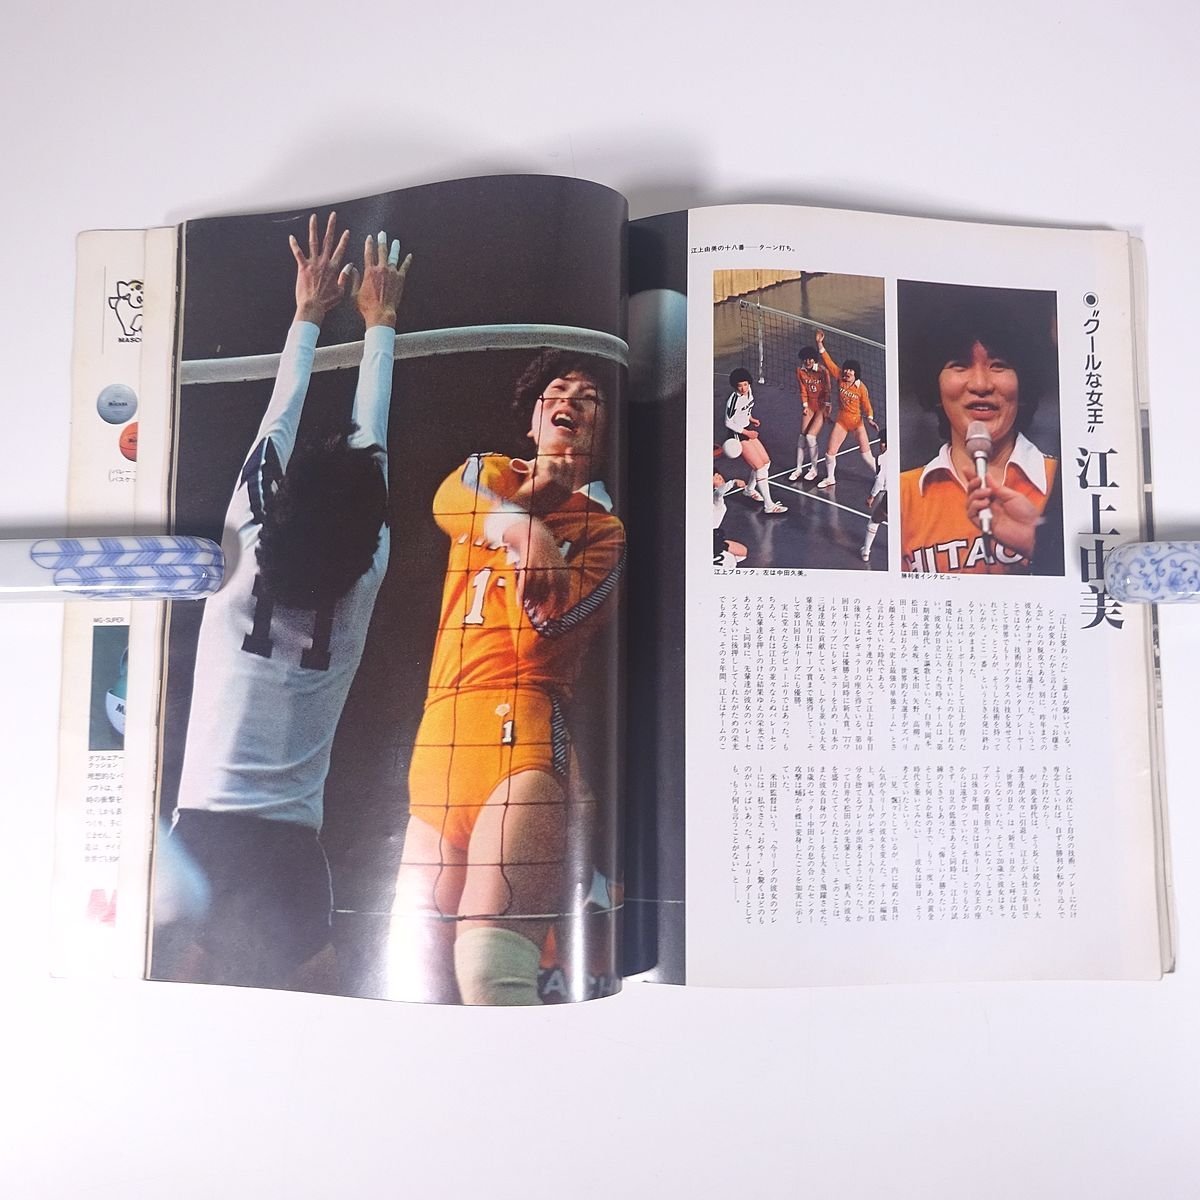  волейбол журнал отдельный выпуск The * Япония Lee gNo.15 no. 15 раз Япония Lee g фотоальбом Apollo n план 1982 большой книга@ фотоальбом волейбол 